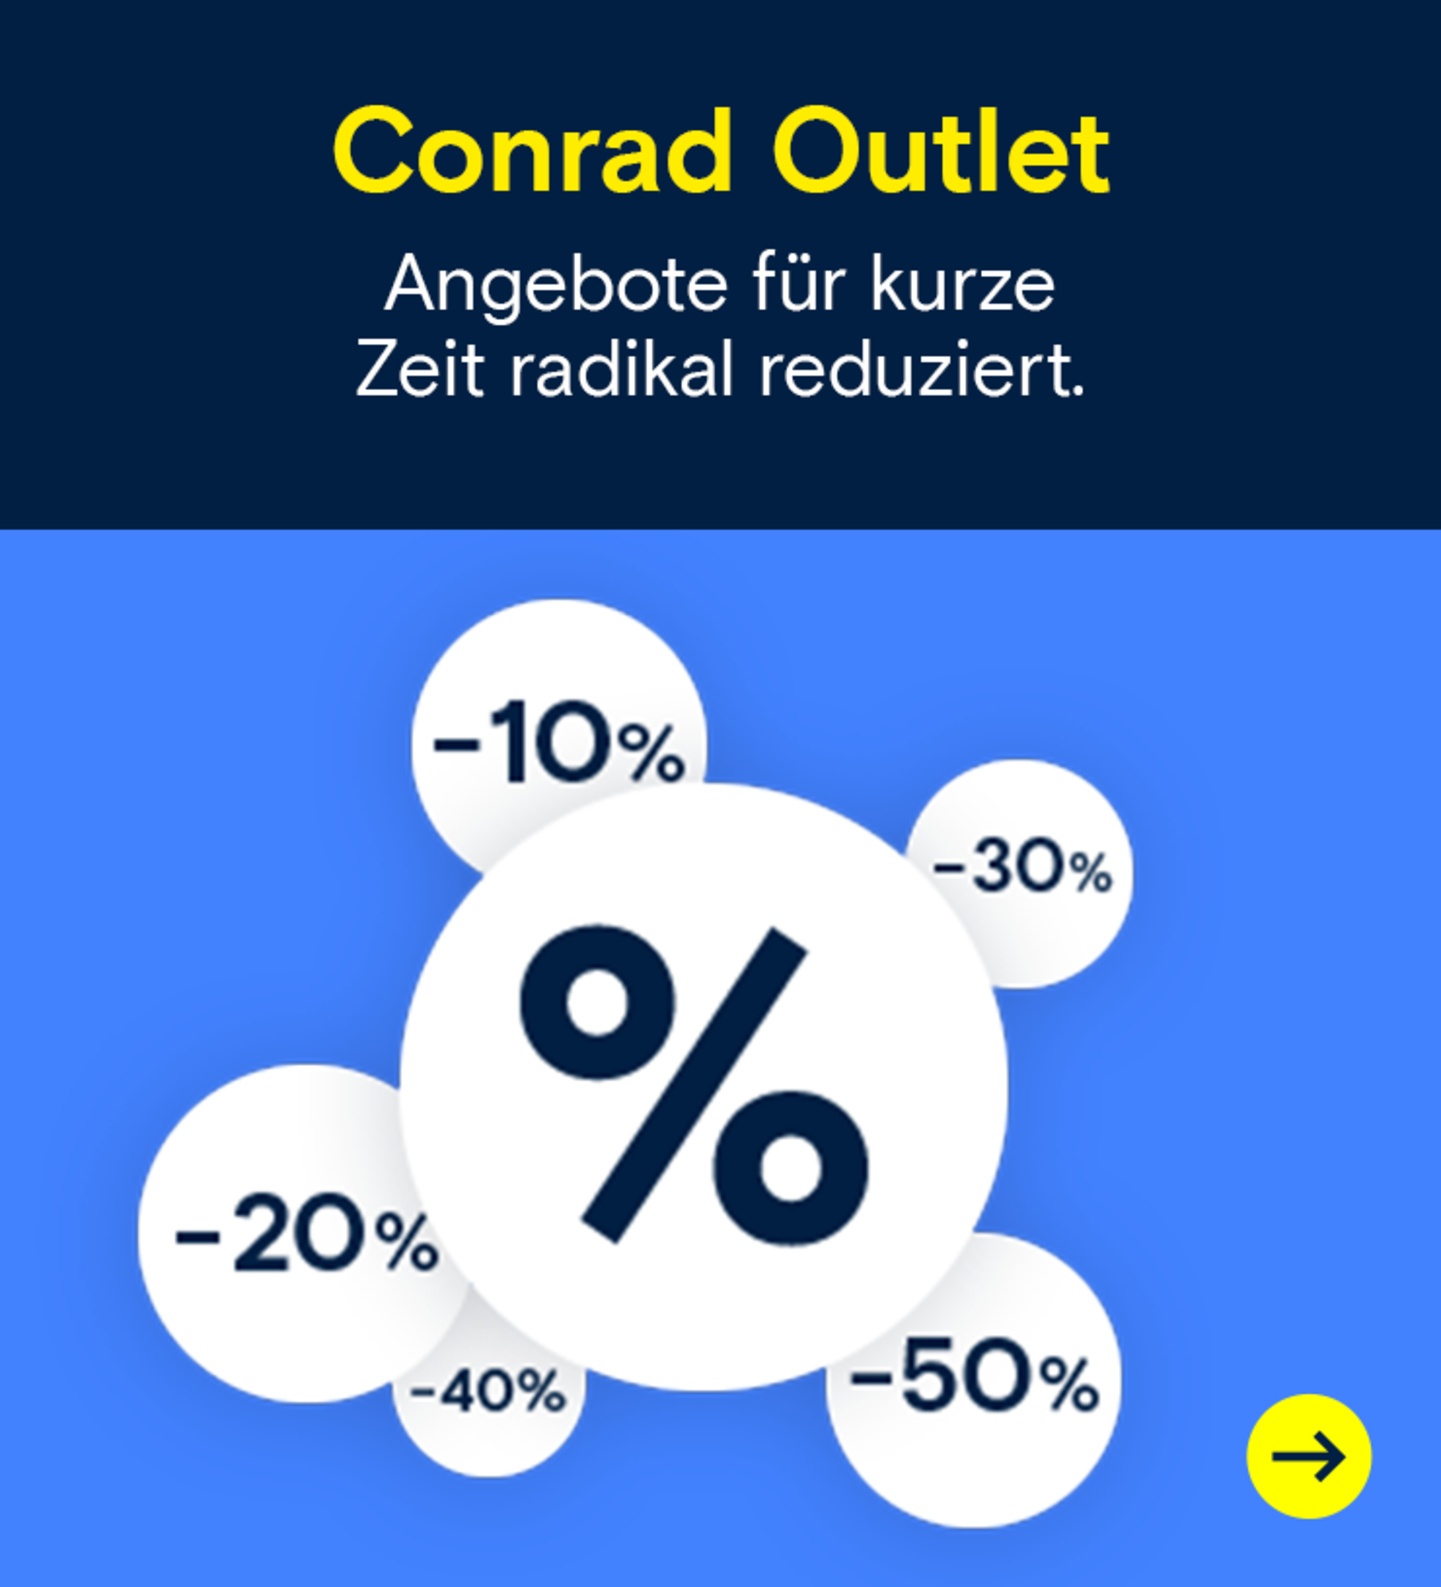 Conrad Outlet:  Angebote für kurze Zeit radikal reduziert.  →